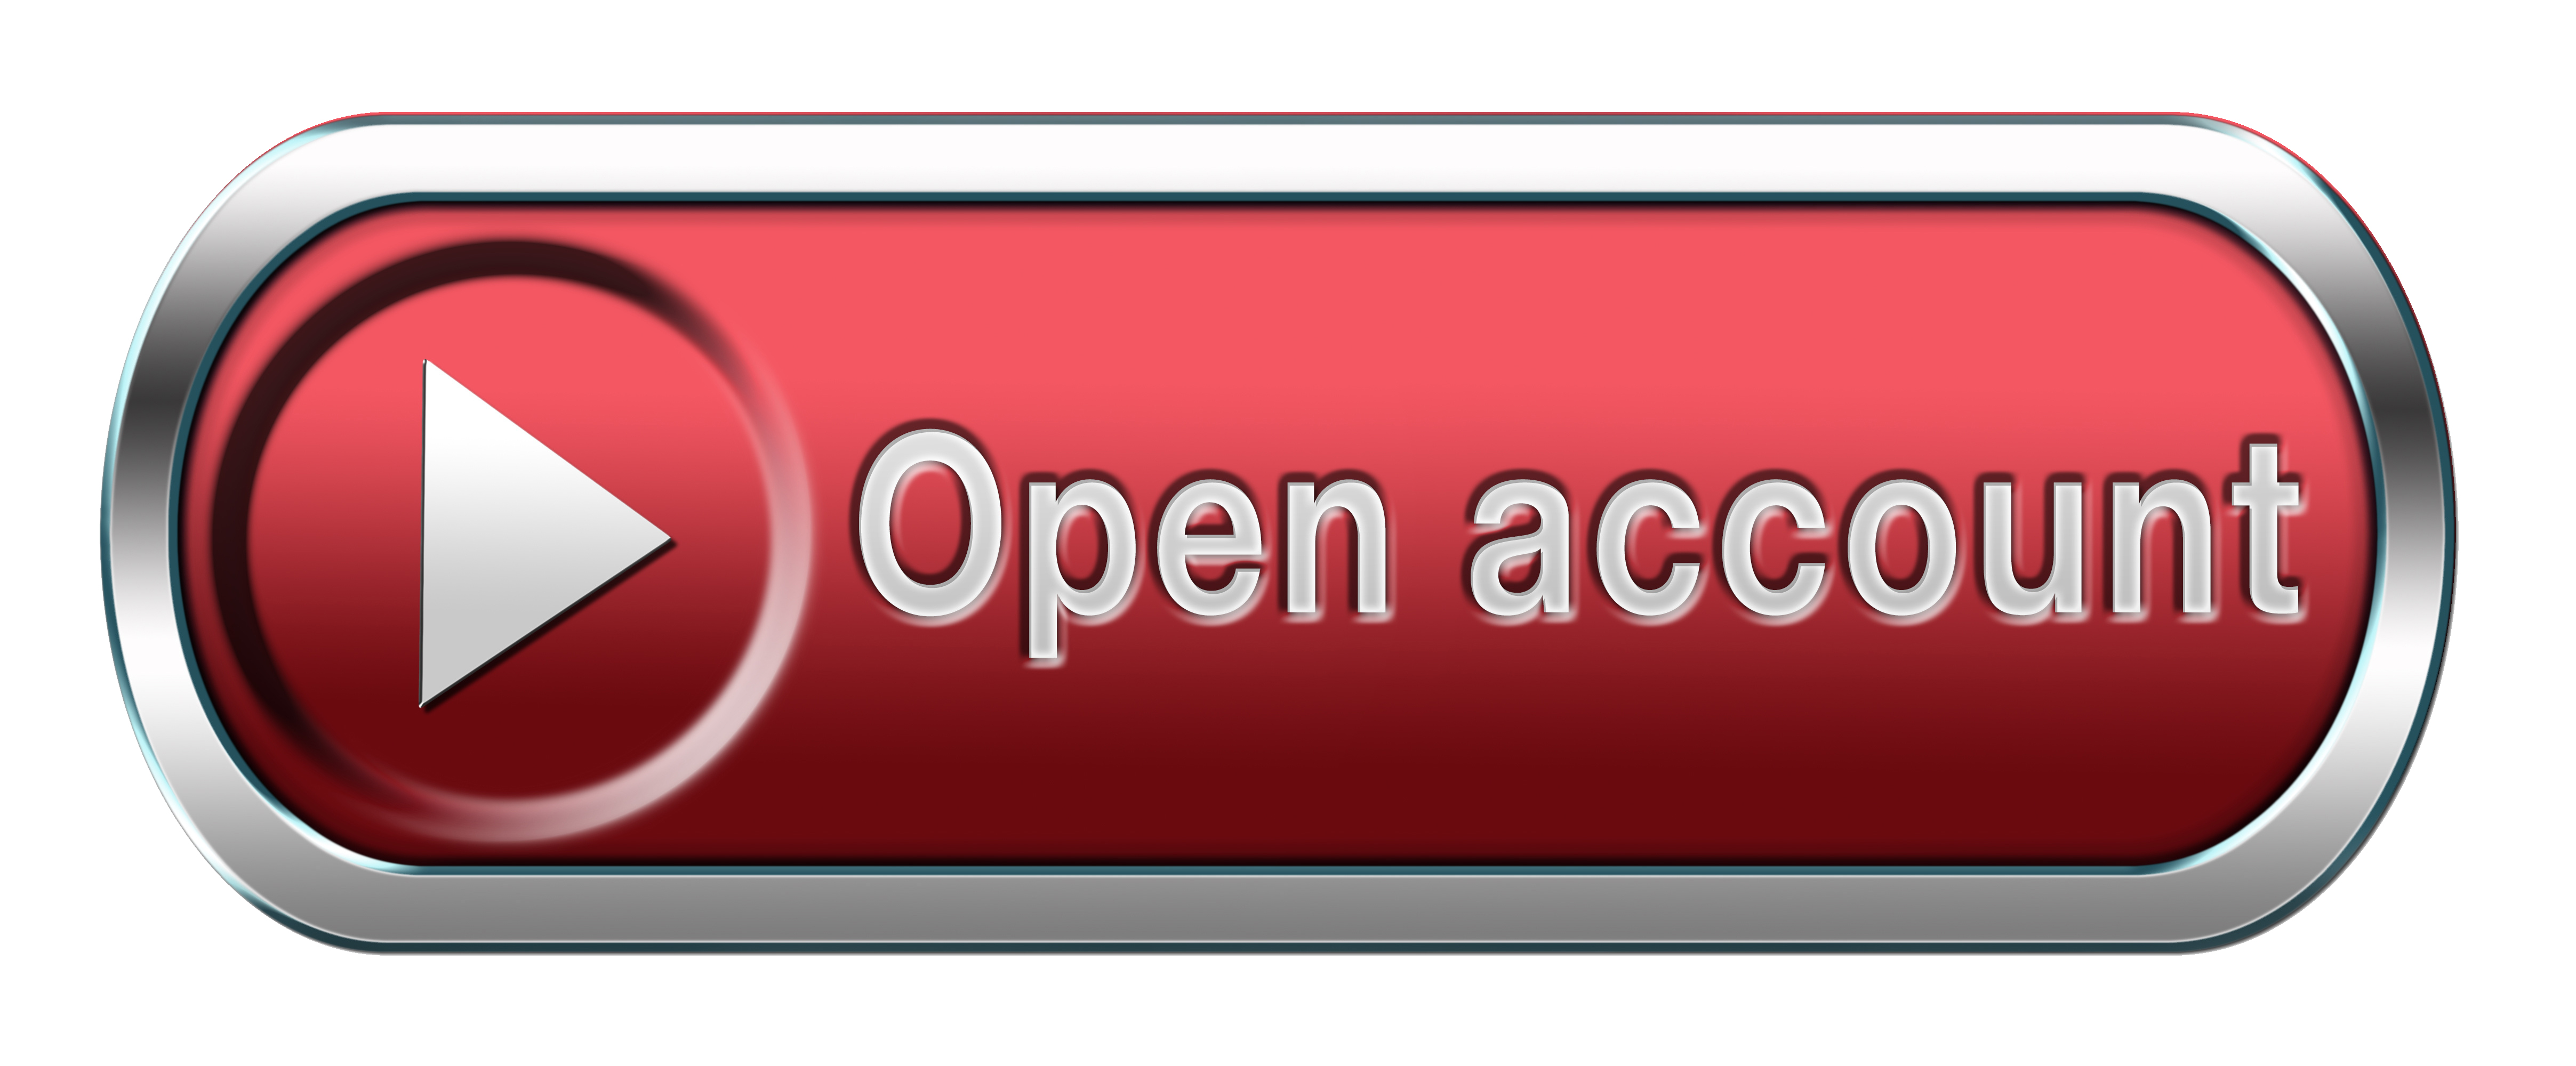 Open Account